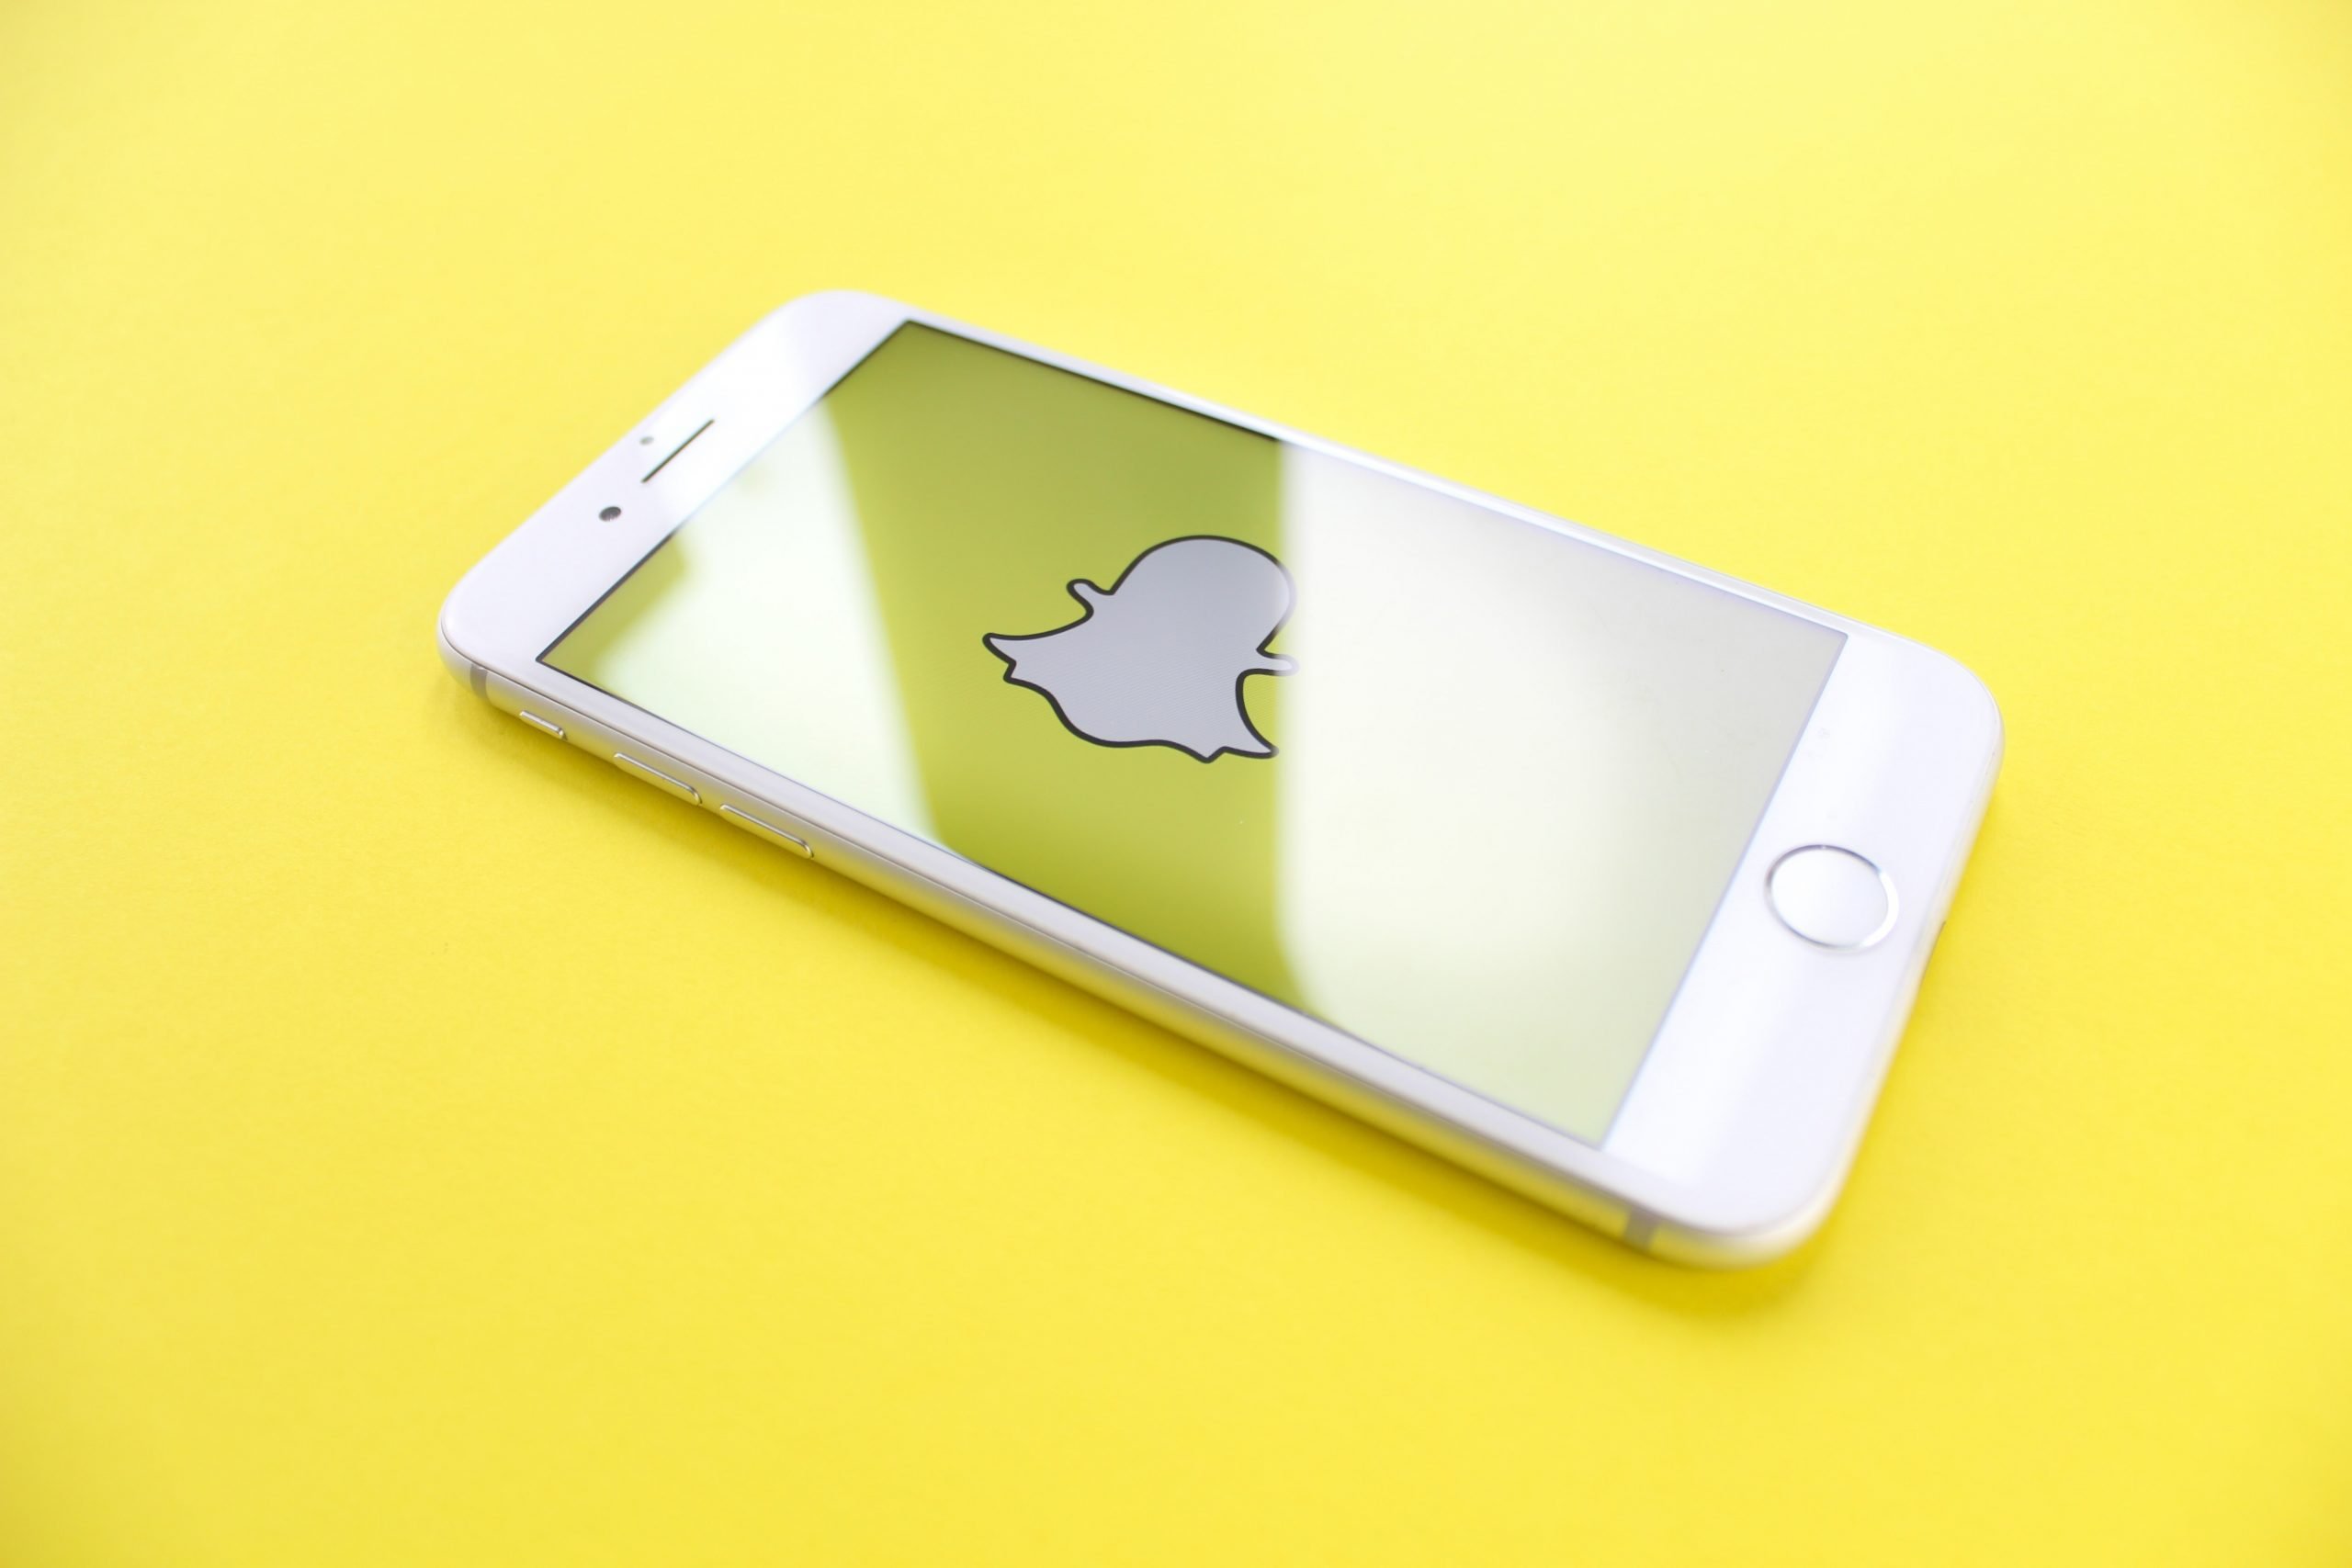 En iphone ligger på en gul yta och visar snapchats logga på skärmen.